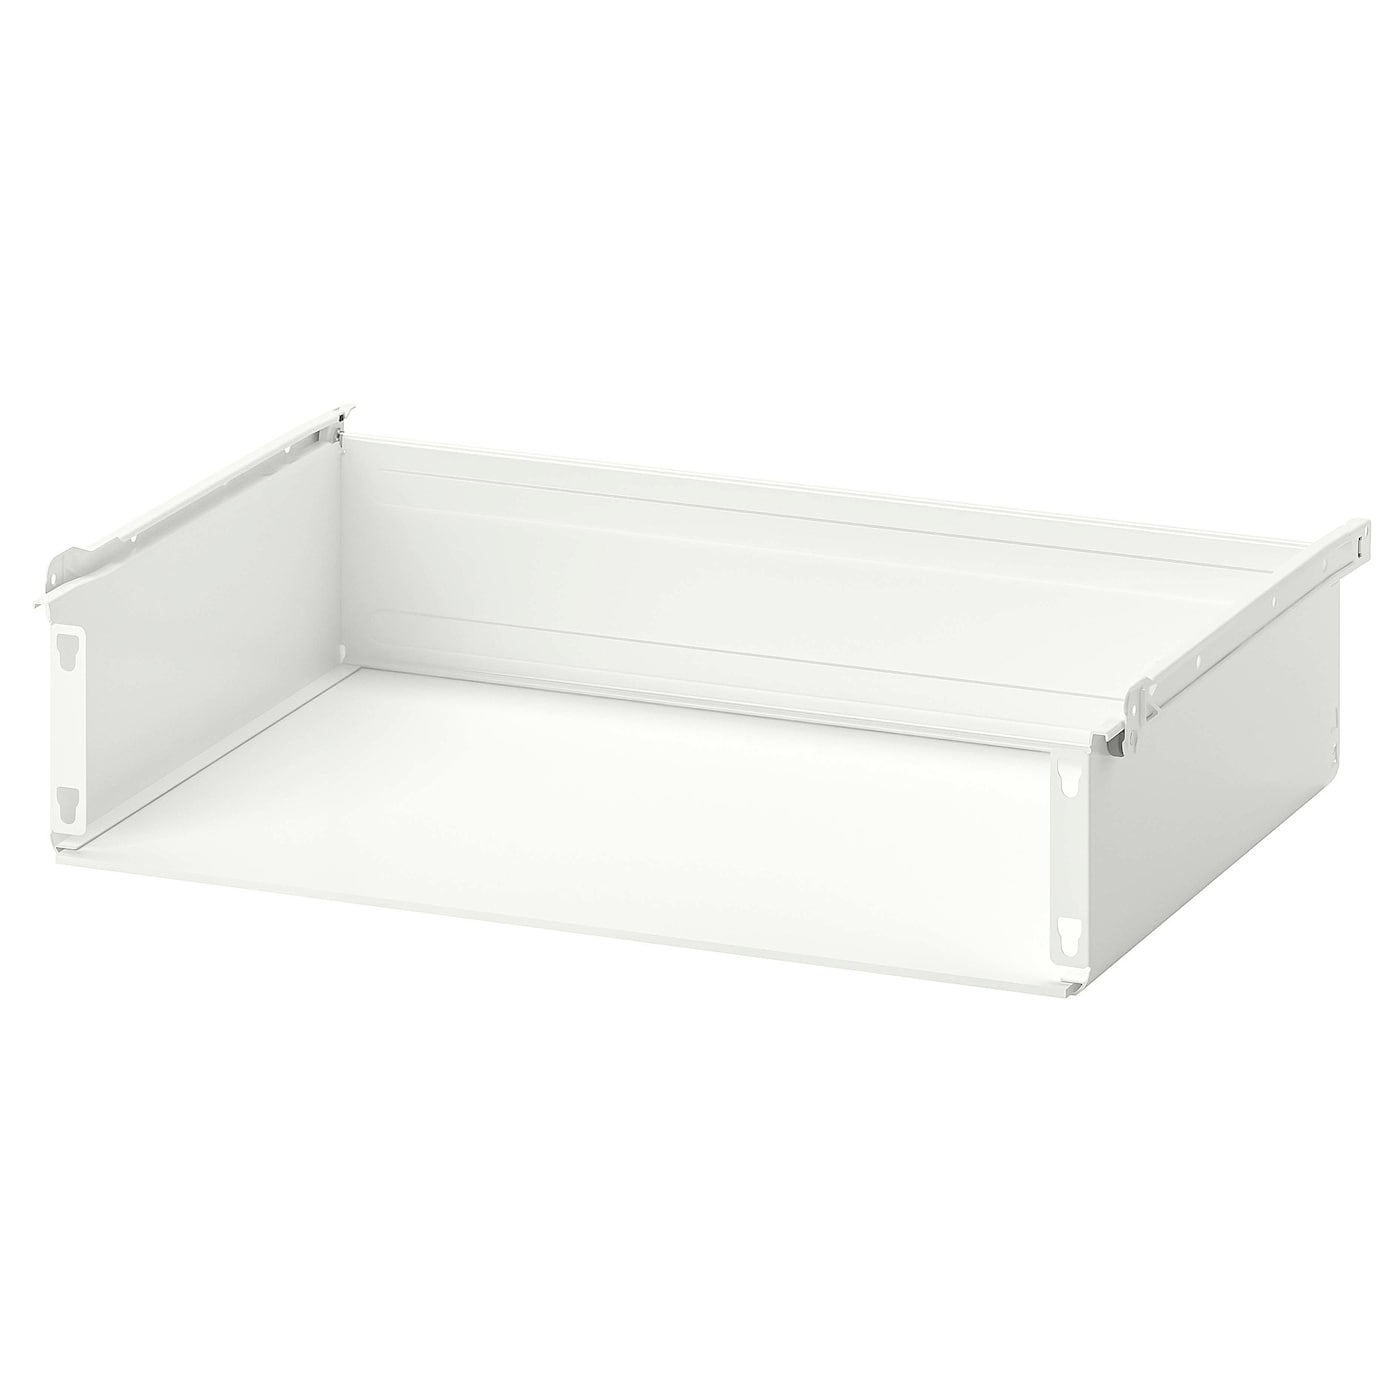 Ящик без фронтальной панели - IKEA HJALPA/HJÄLPA, 60x40 см, белый ХЭЛПА ИКЕА